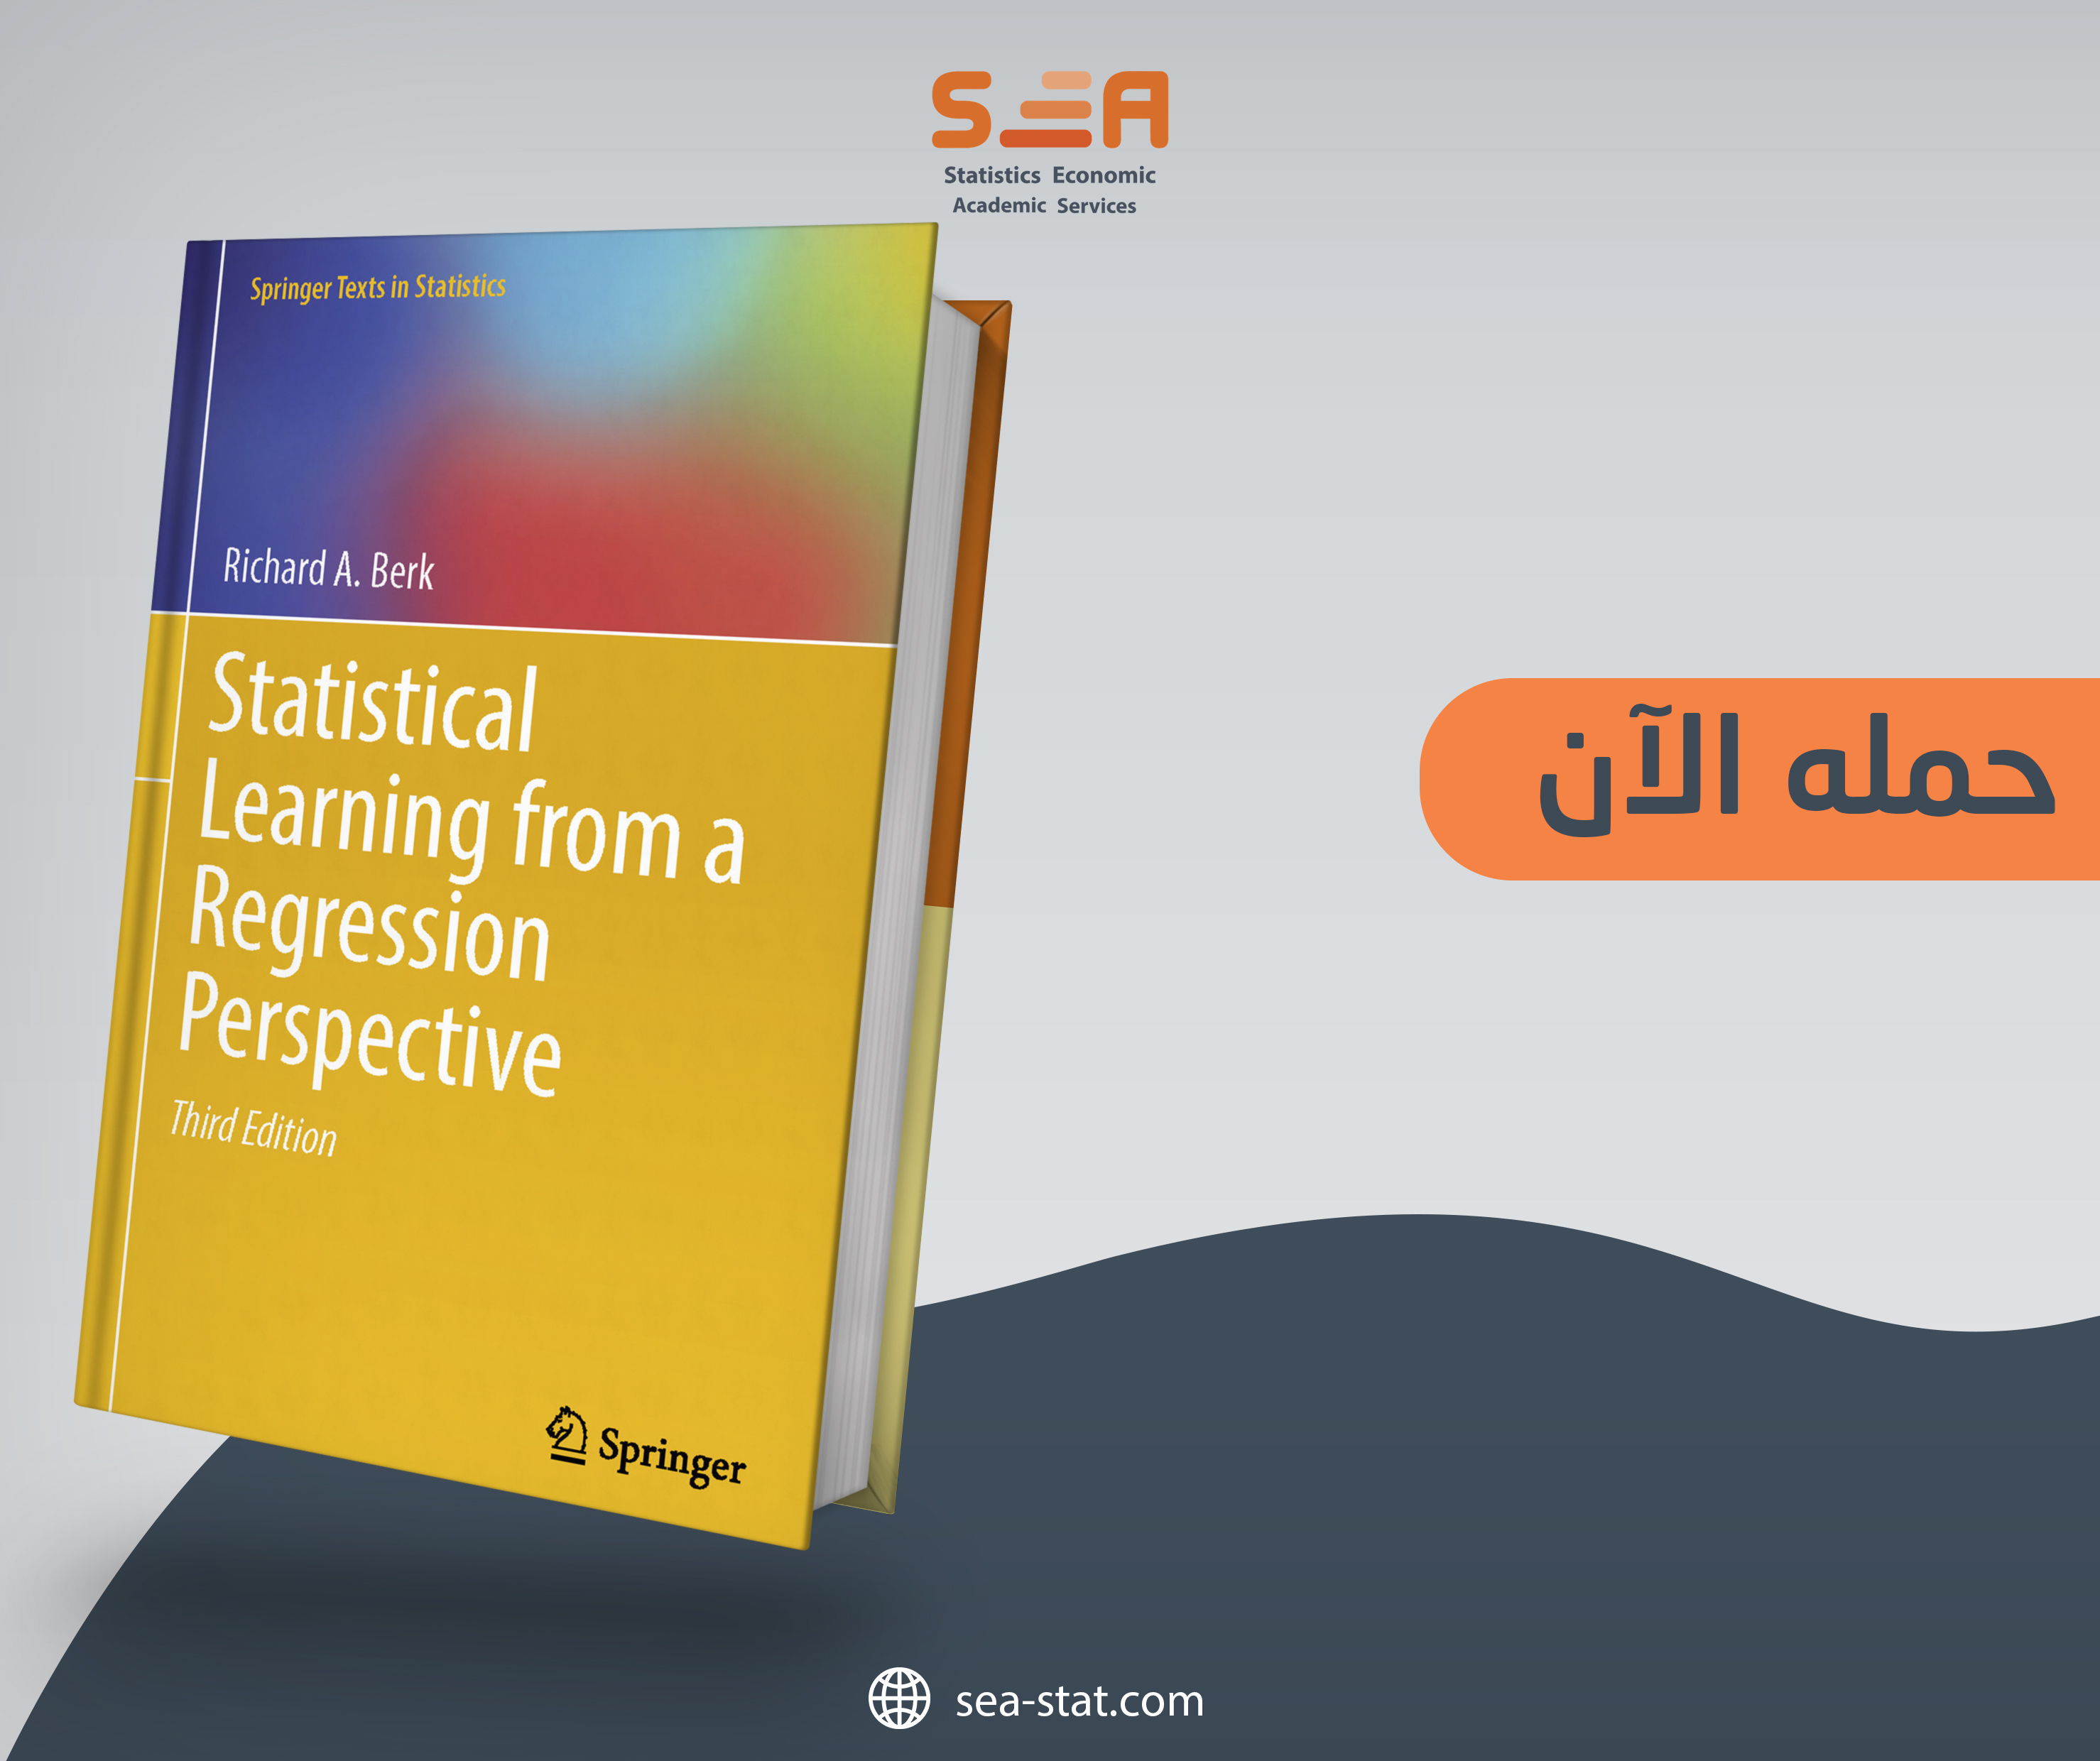 تحميل كتاب “Statistical Learning from a Regression Perspective” مجاناً